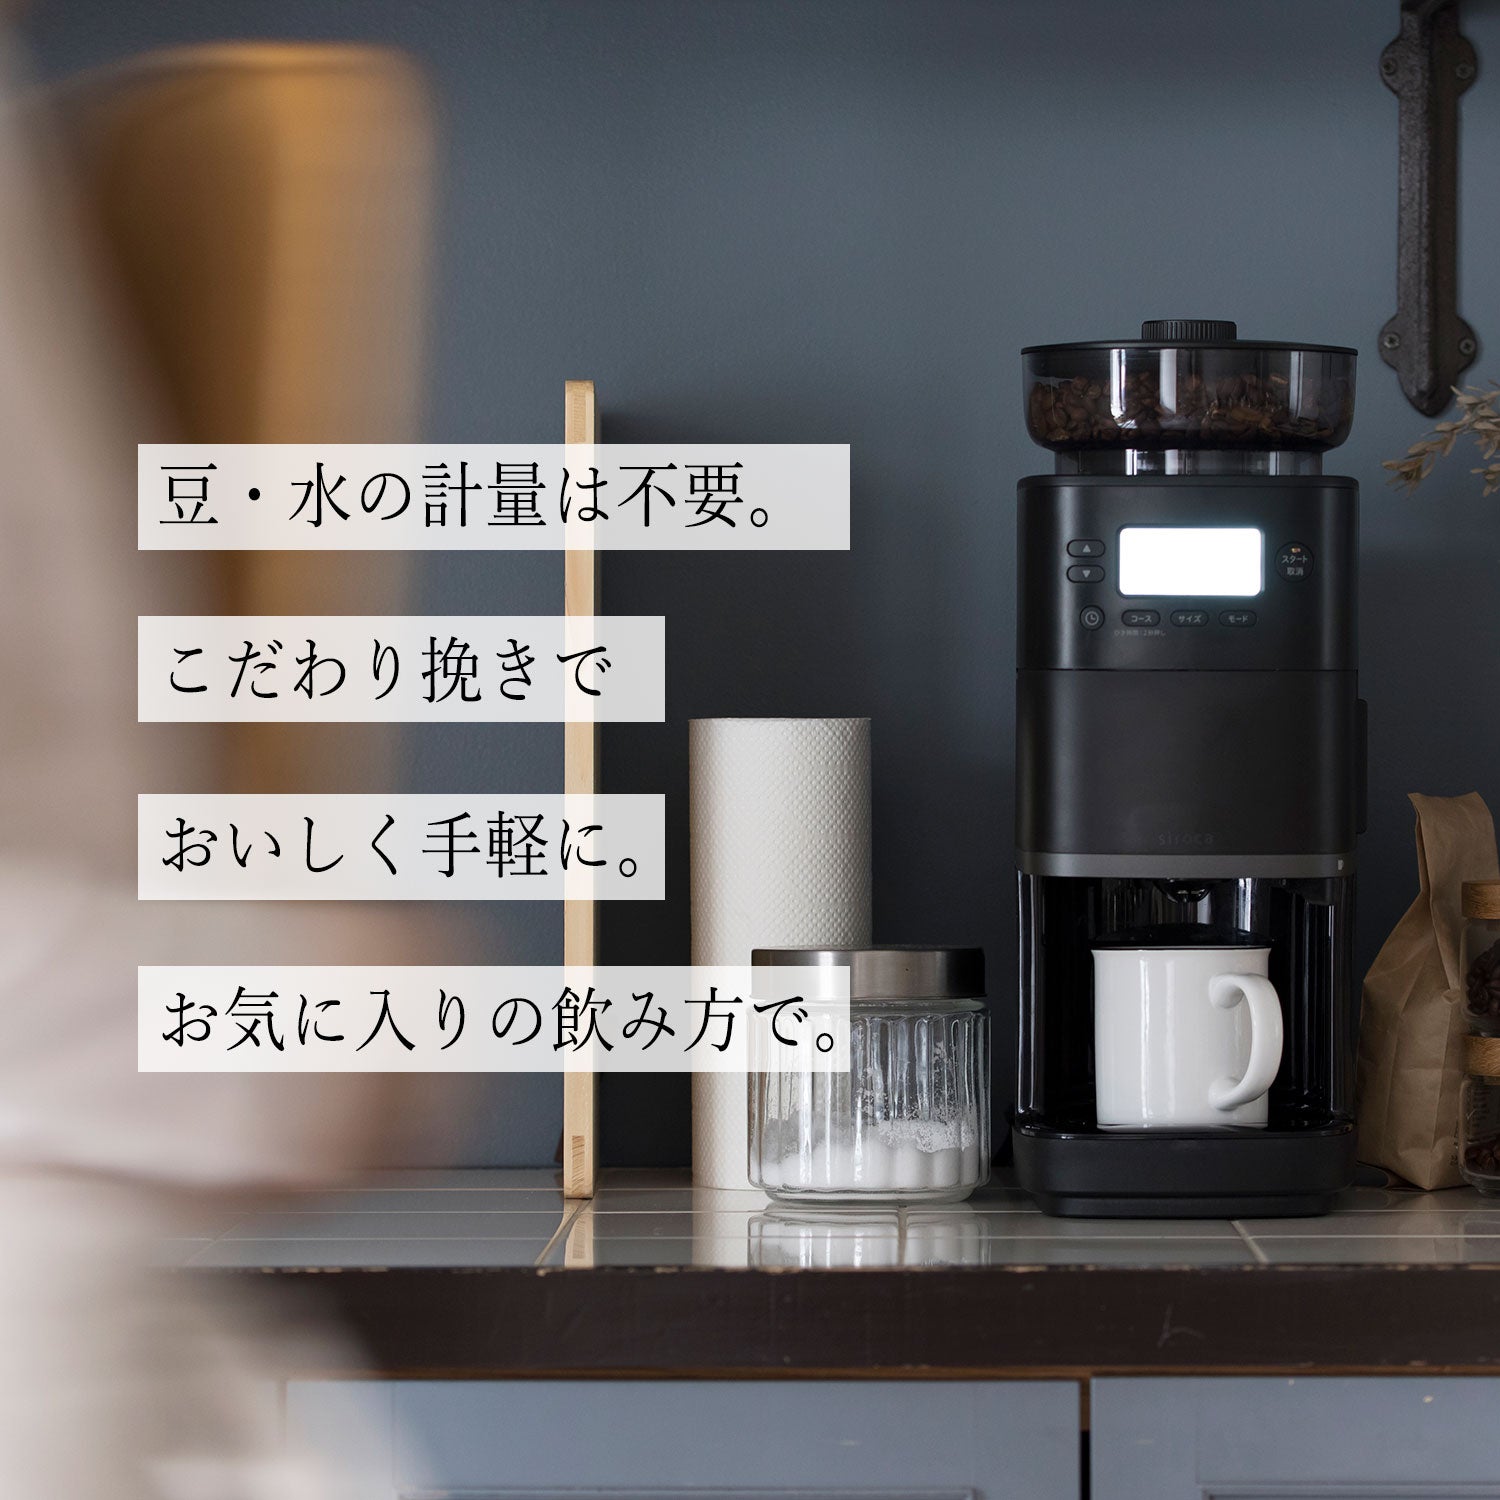 コーン式全自動コーヒーメーカー「カフェばこPRO」 SC-C251 シロカオンラインストア